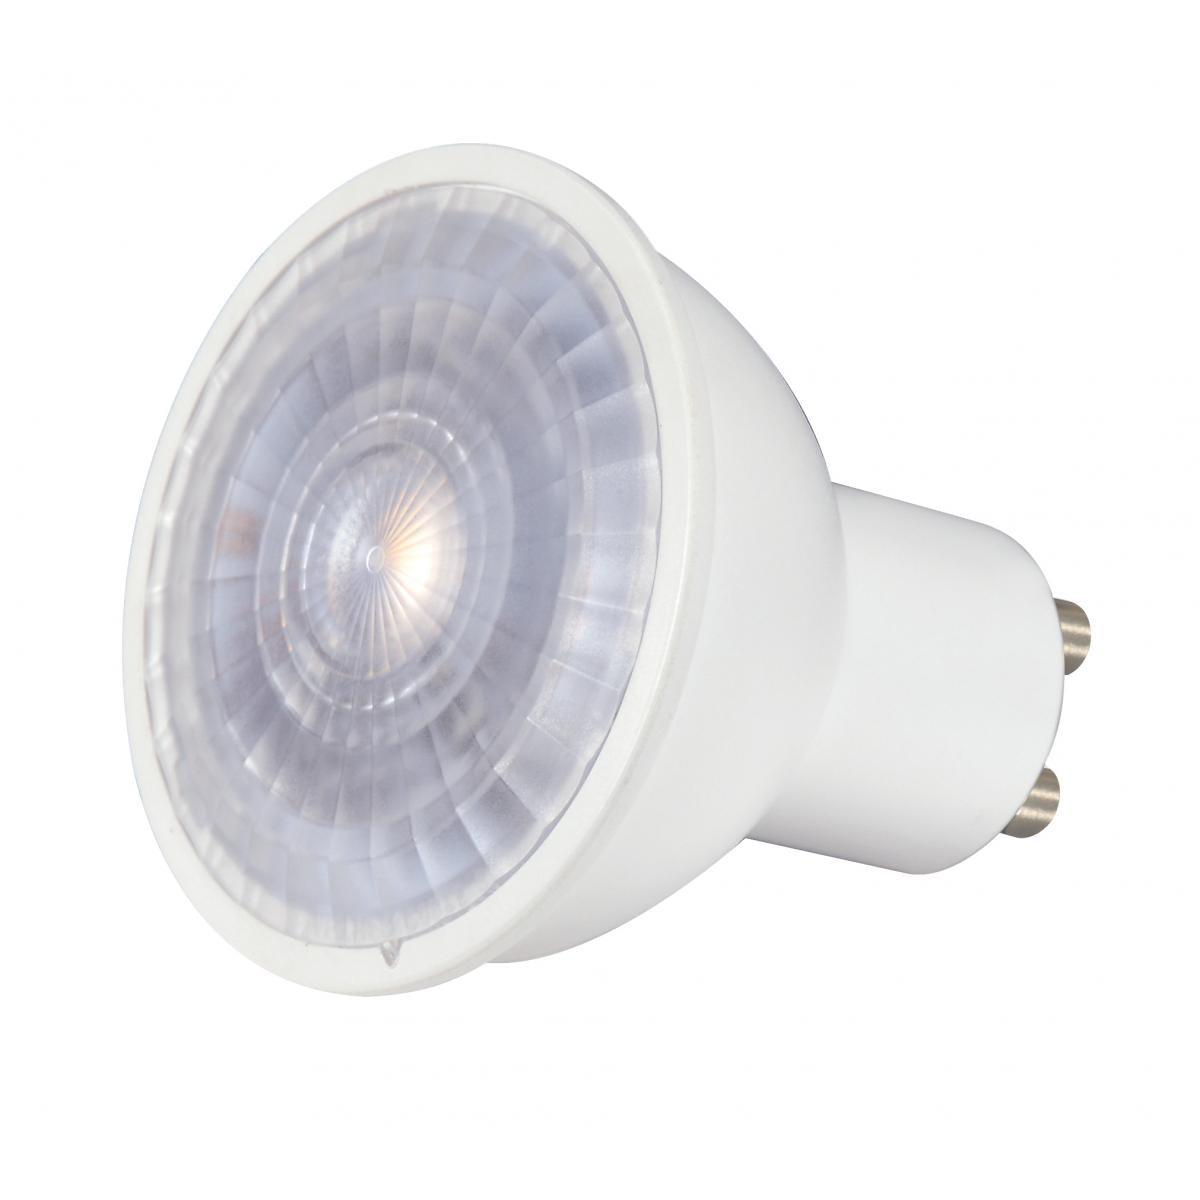 MR16 Reflector LED bulb, 7 watt, 450 Lumens, 3000K, GU10 Base, 40 Deg. Flood - Bees Lighting